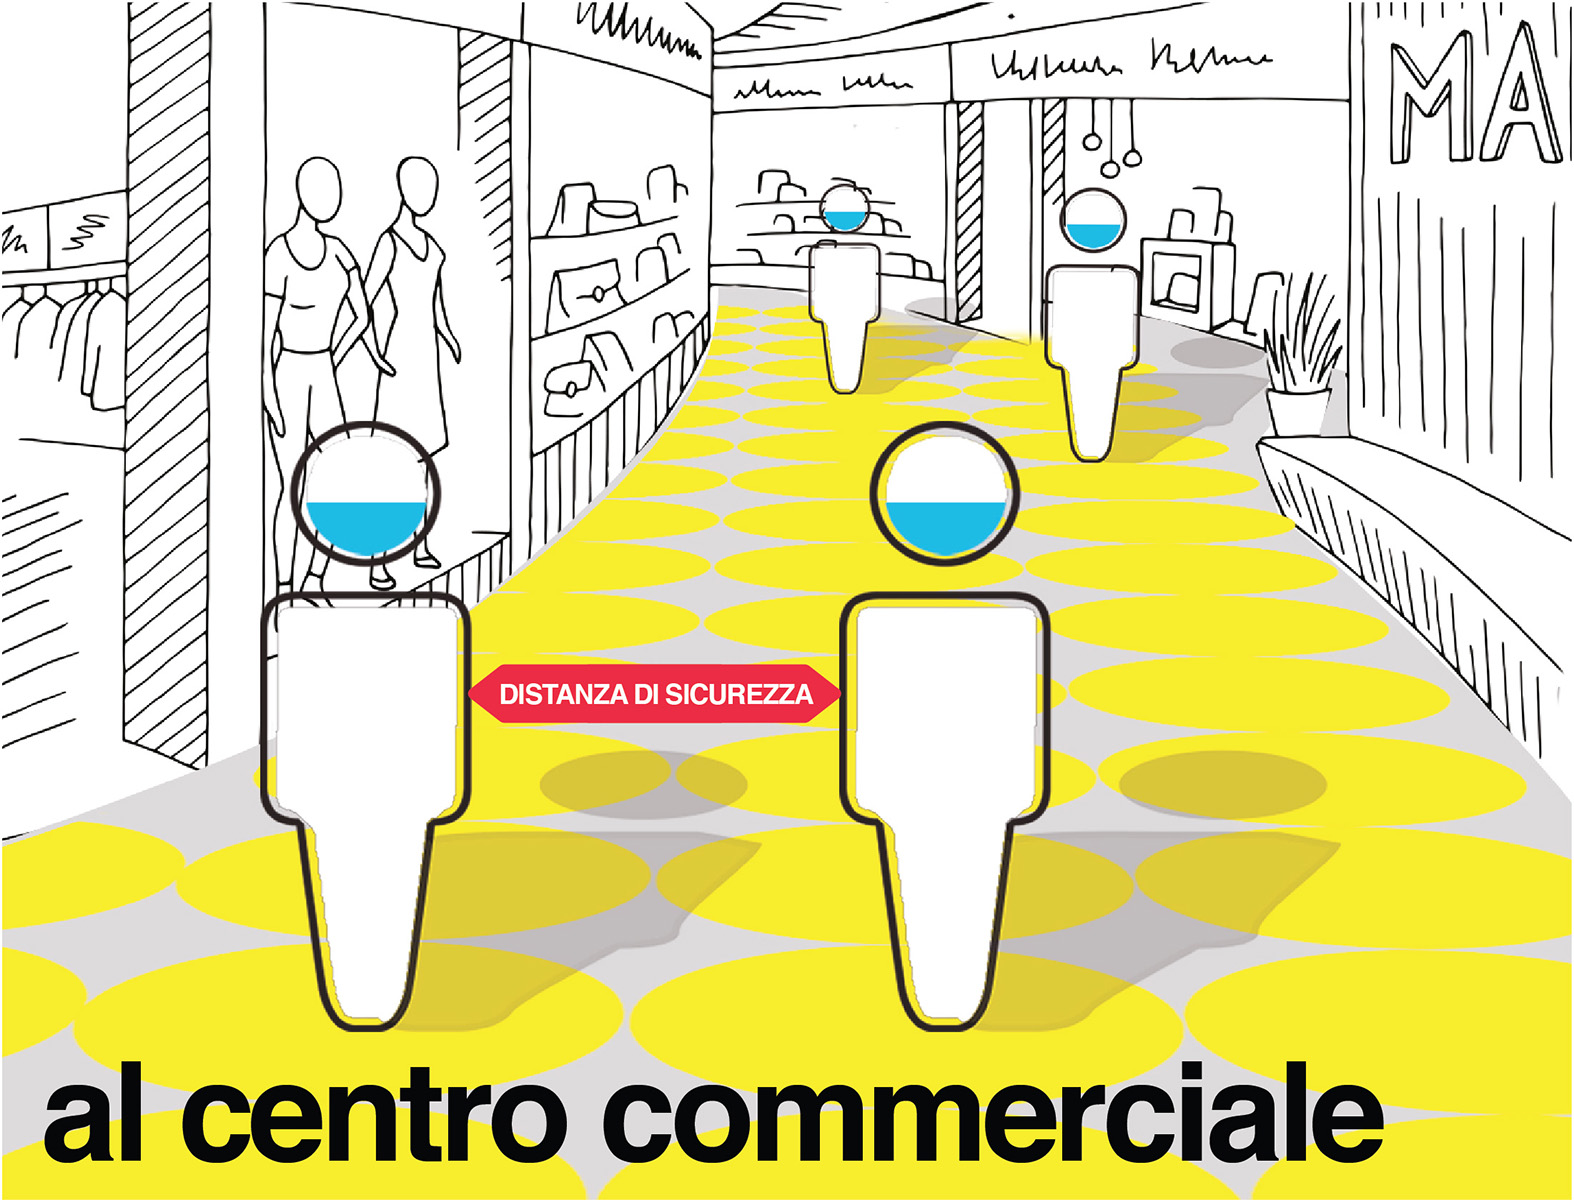 Basic Bubble - Al centro commerciale